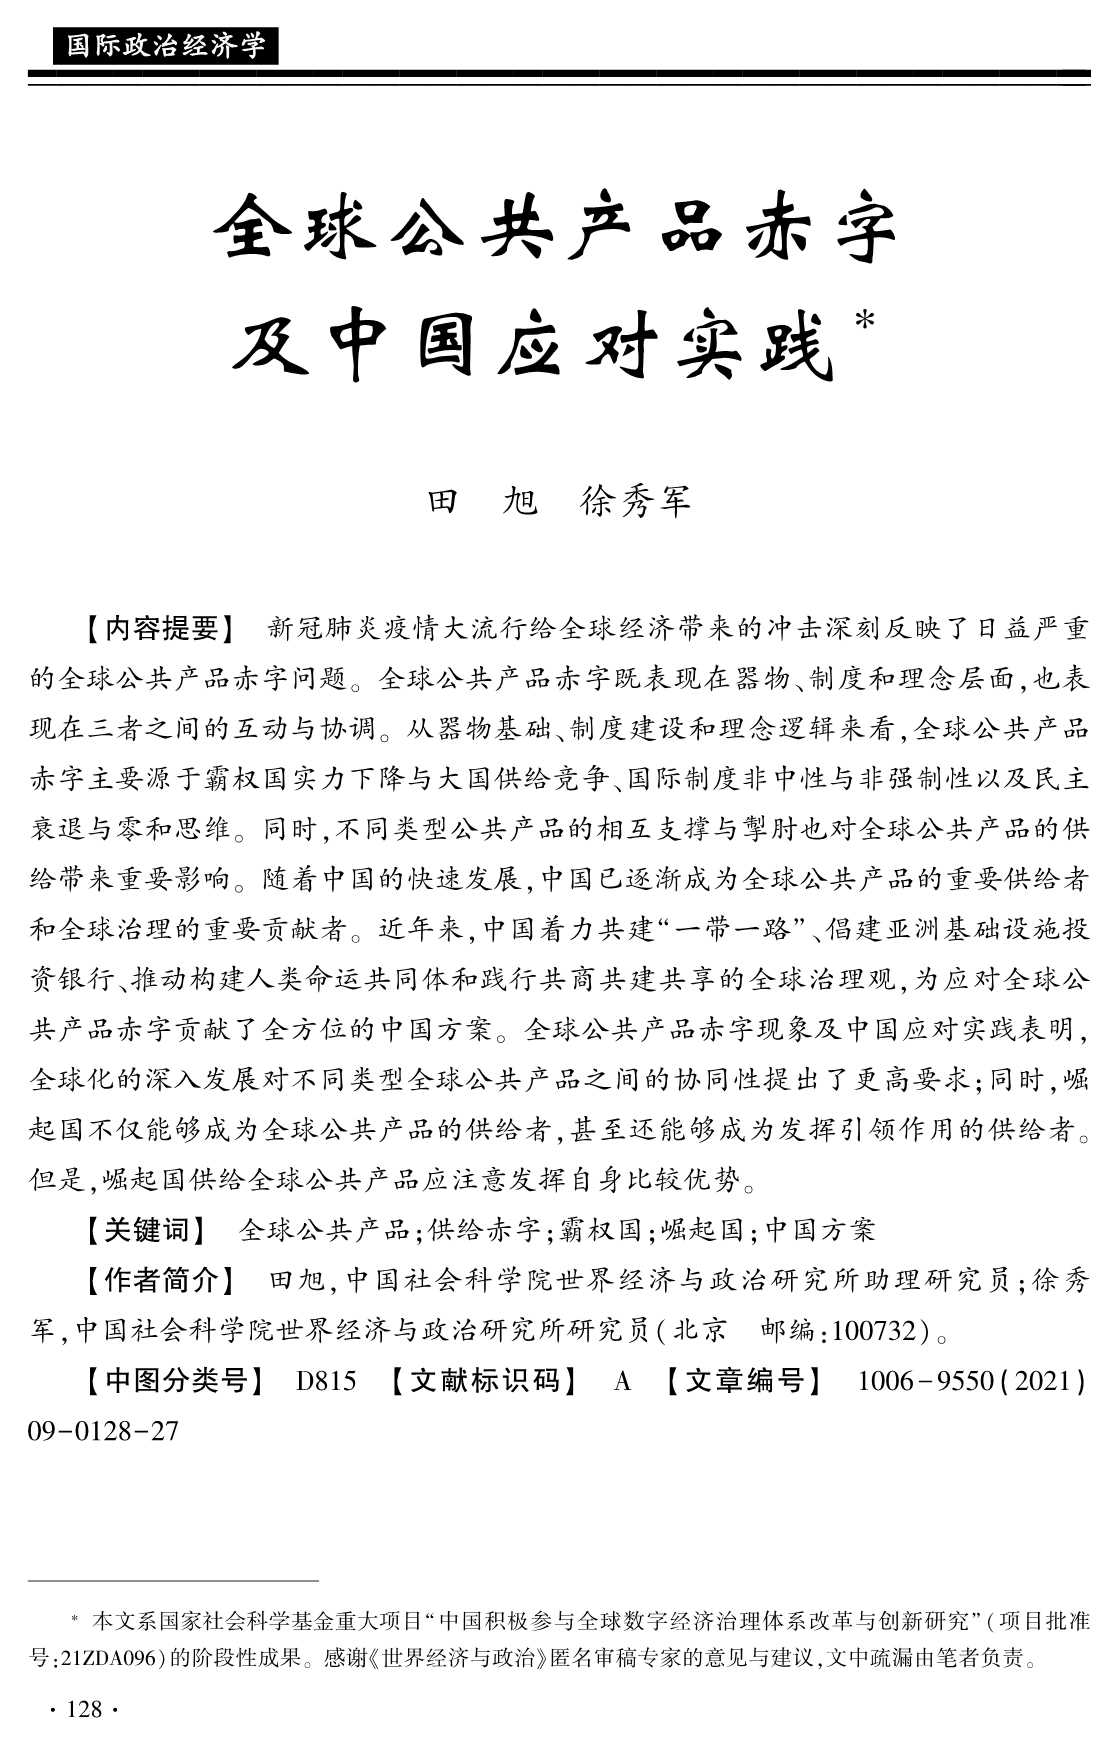 社科院-全球公共产品赤字及中国应对实践-2021.11-27页